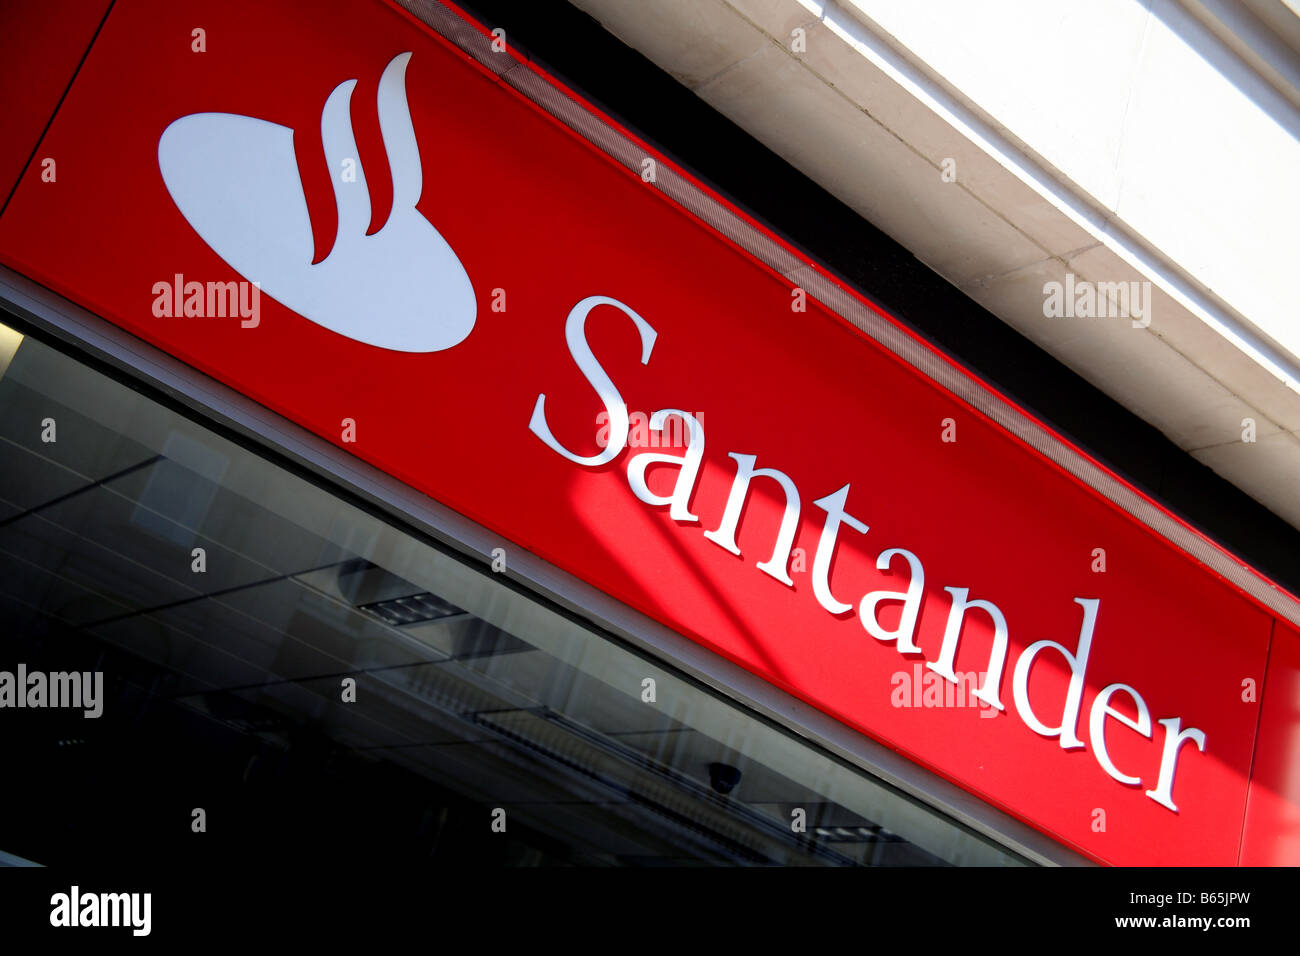 Branch of Spanish bank Santander in London Stock Photo